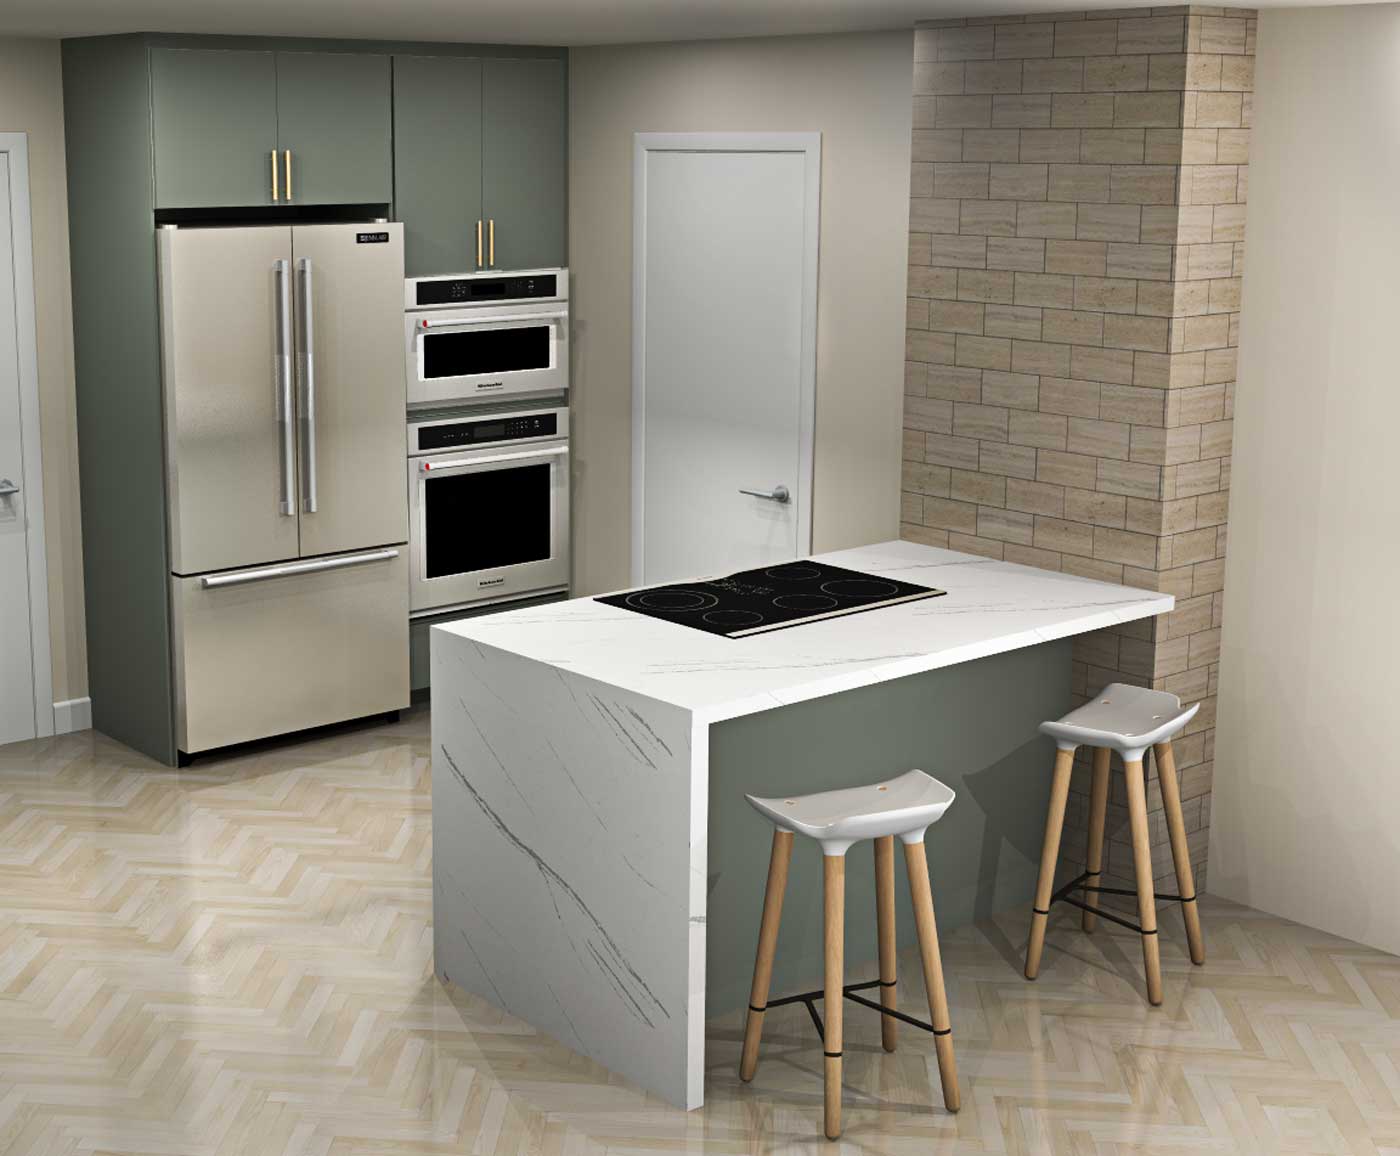 Frigo Tiroir Ikea Gallery  Modern kitchen appliances, Kitchen design,  Kitchen bathroom remodel